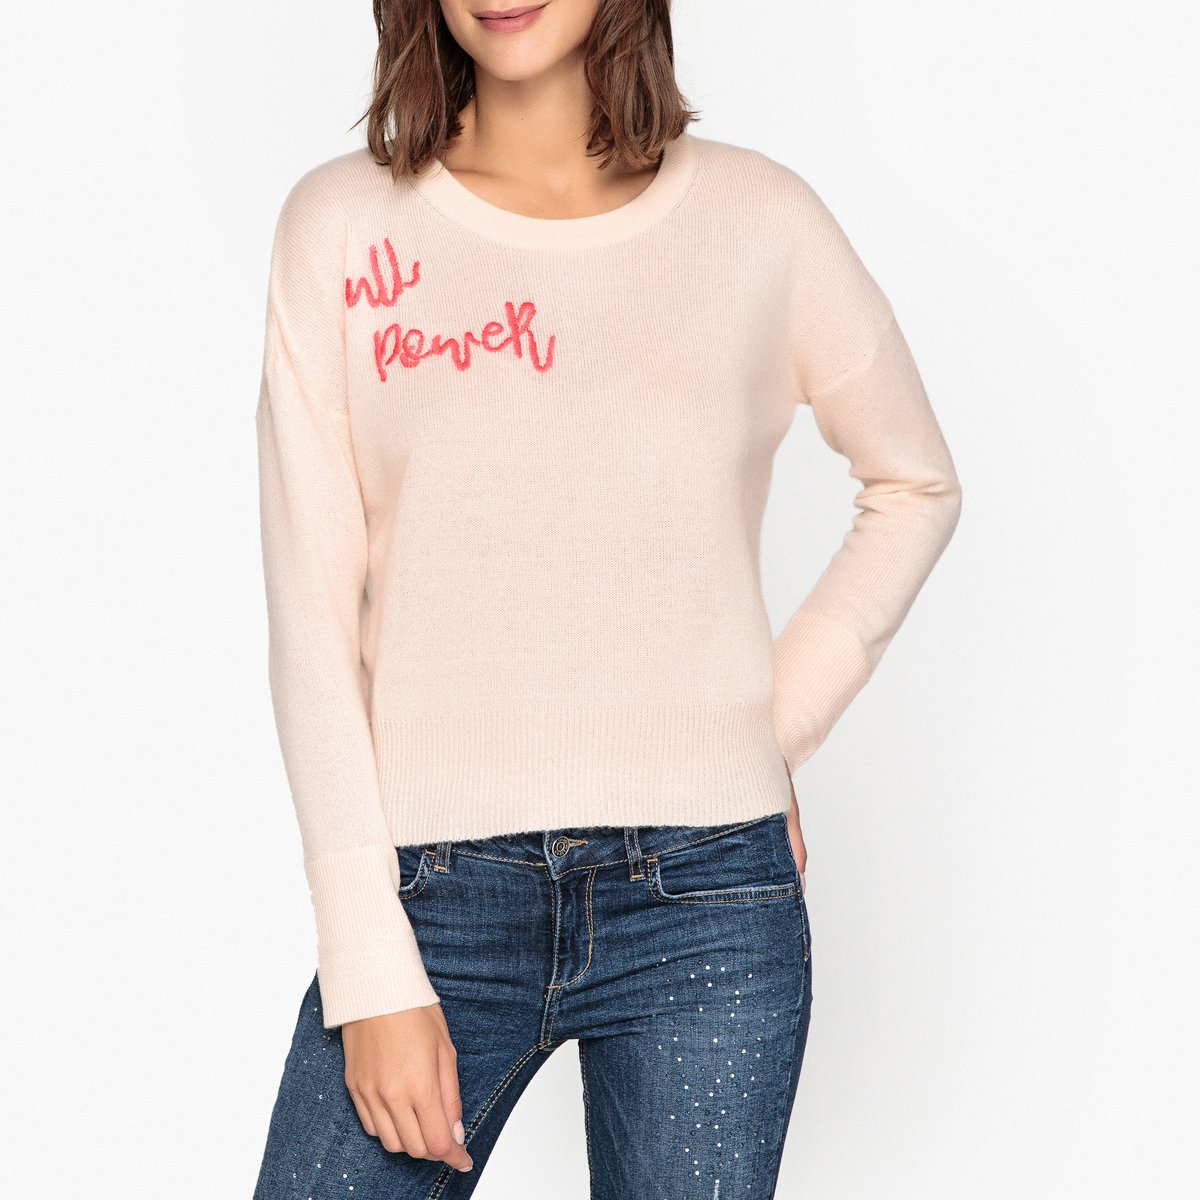 Пуловер Из кашемира AARON S розовый